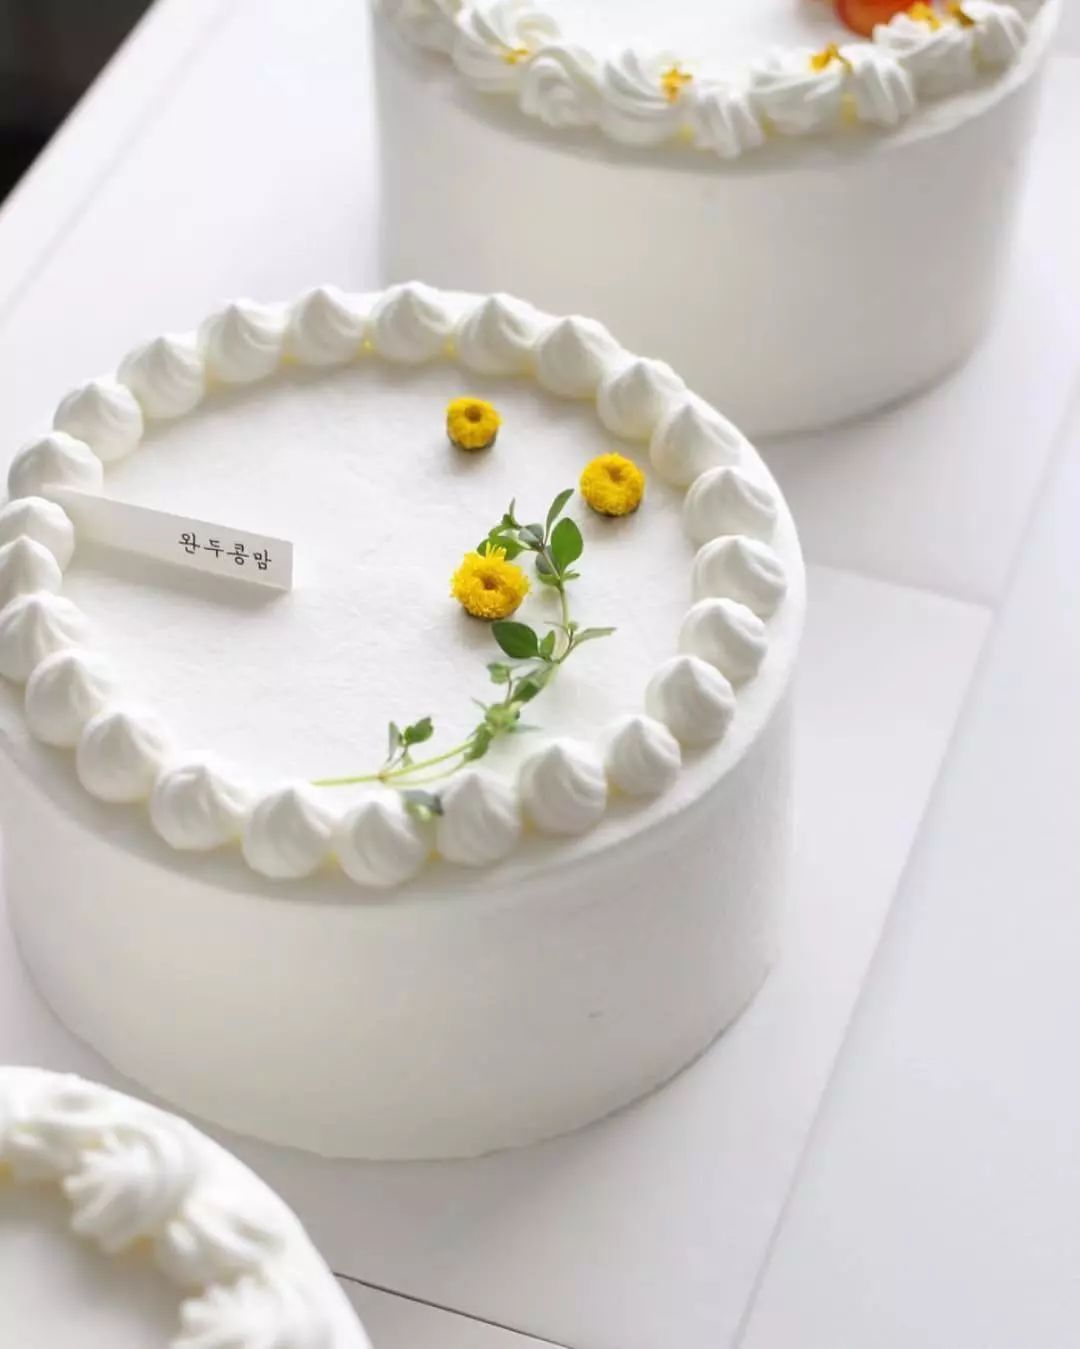 71张新款韩式奶油裱花图鉴,想要蛋糕卖的好?造型真的不能输!